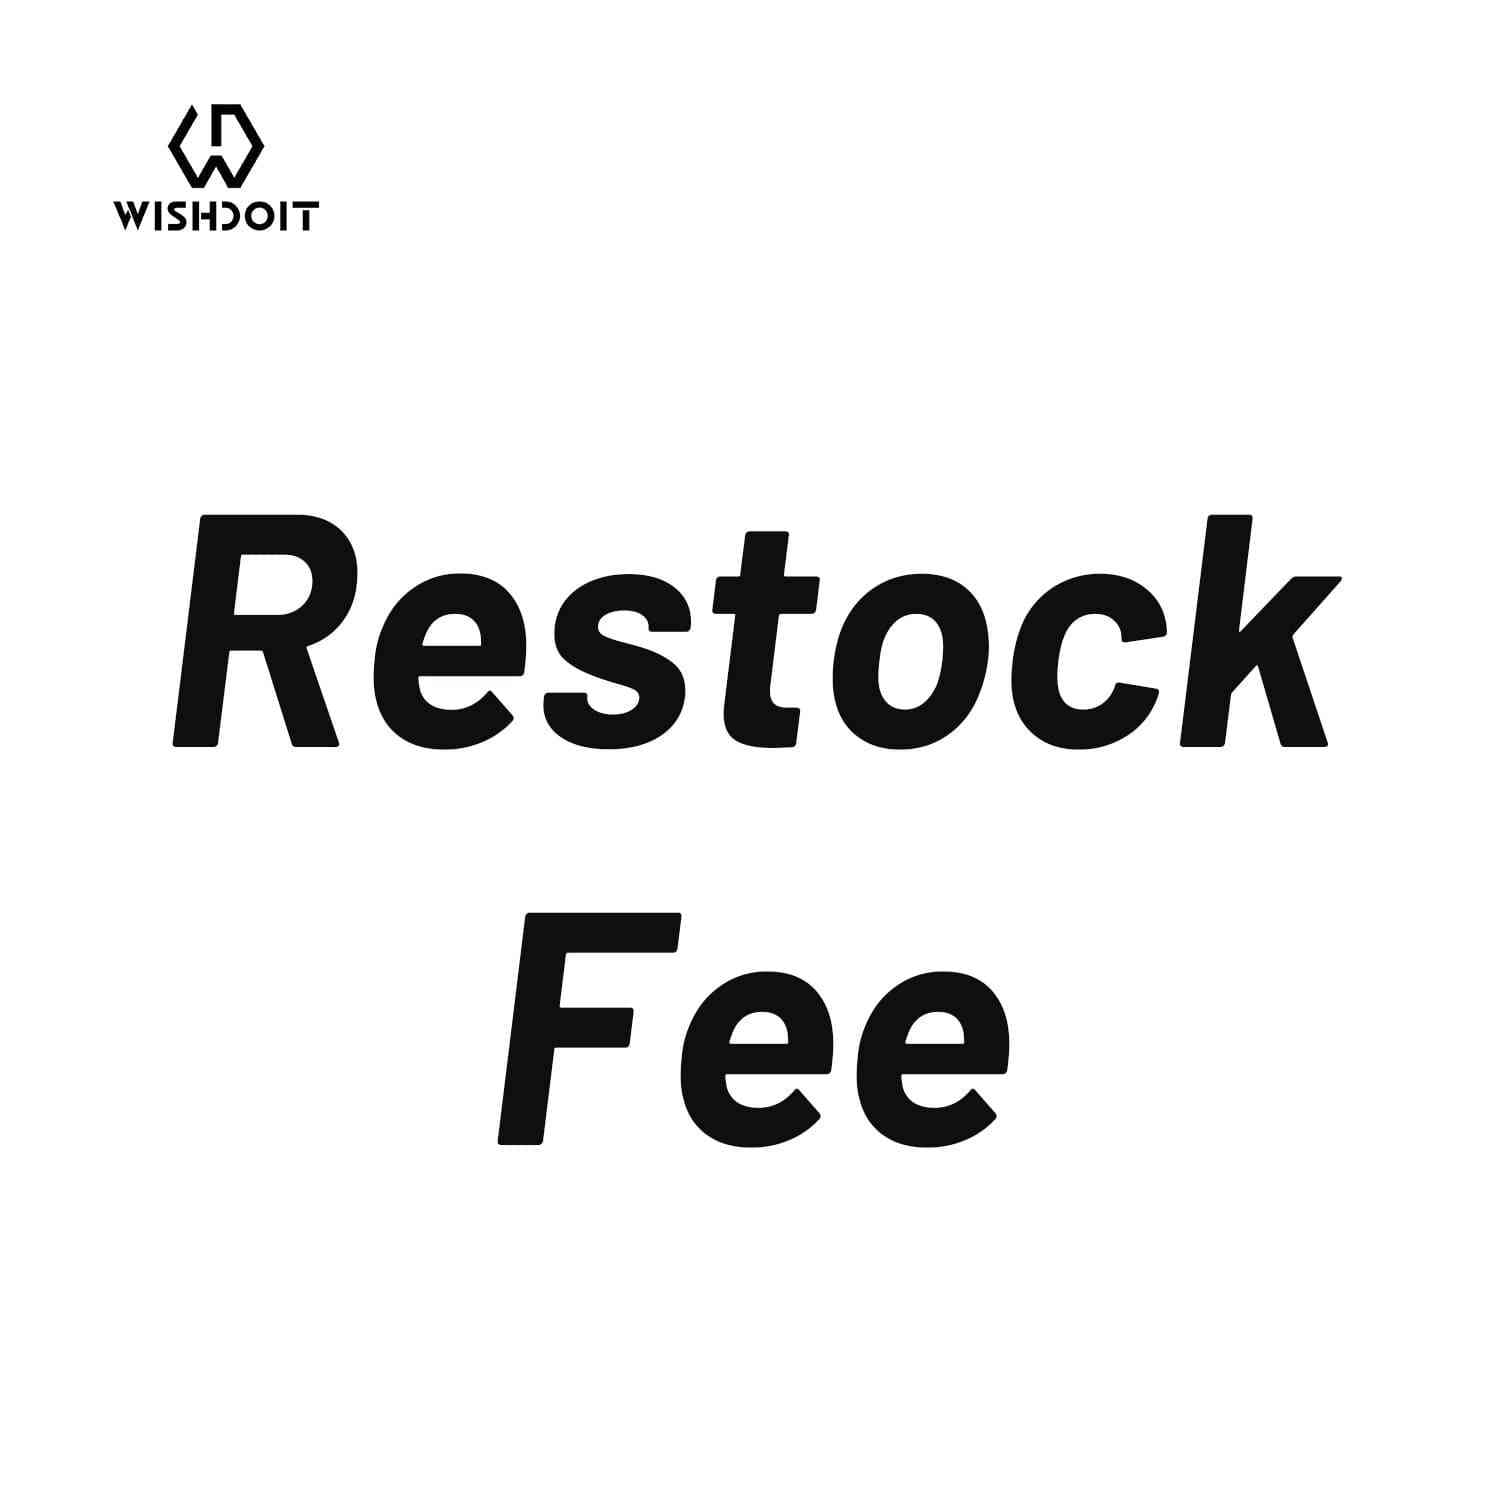 Restock Fee - Wishdoit WatchesRestock Fee